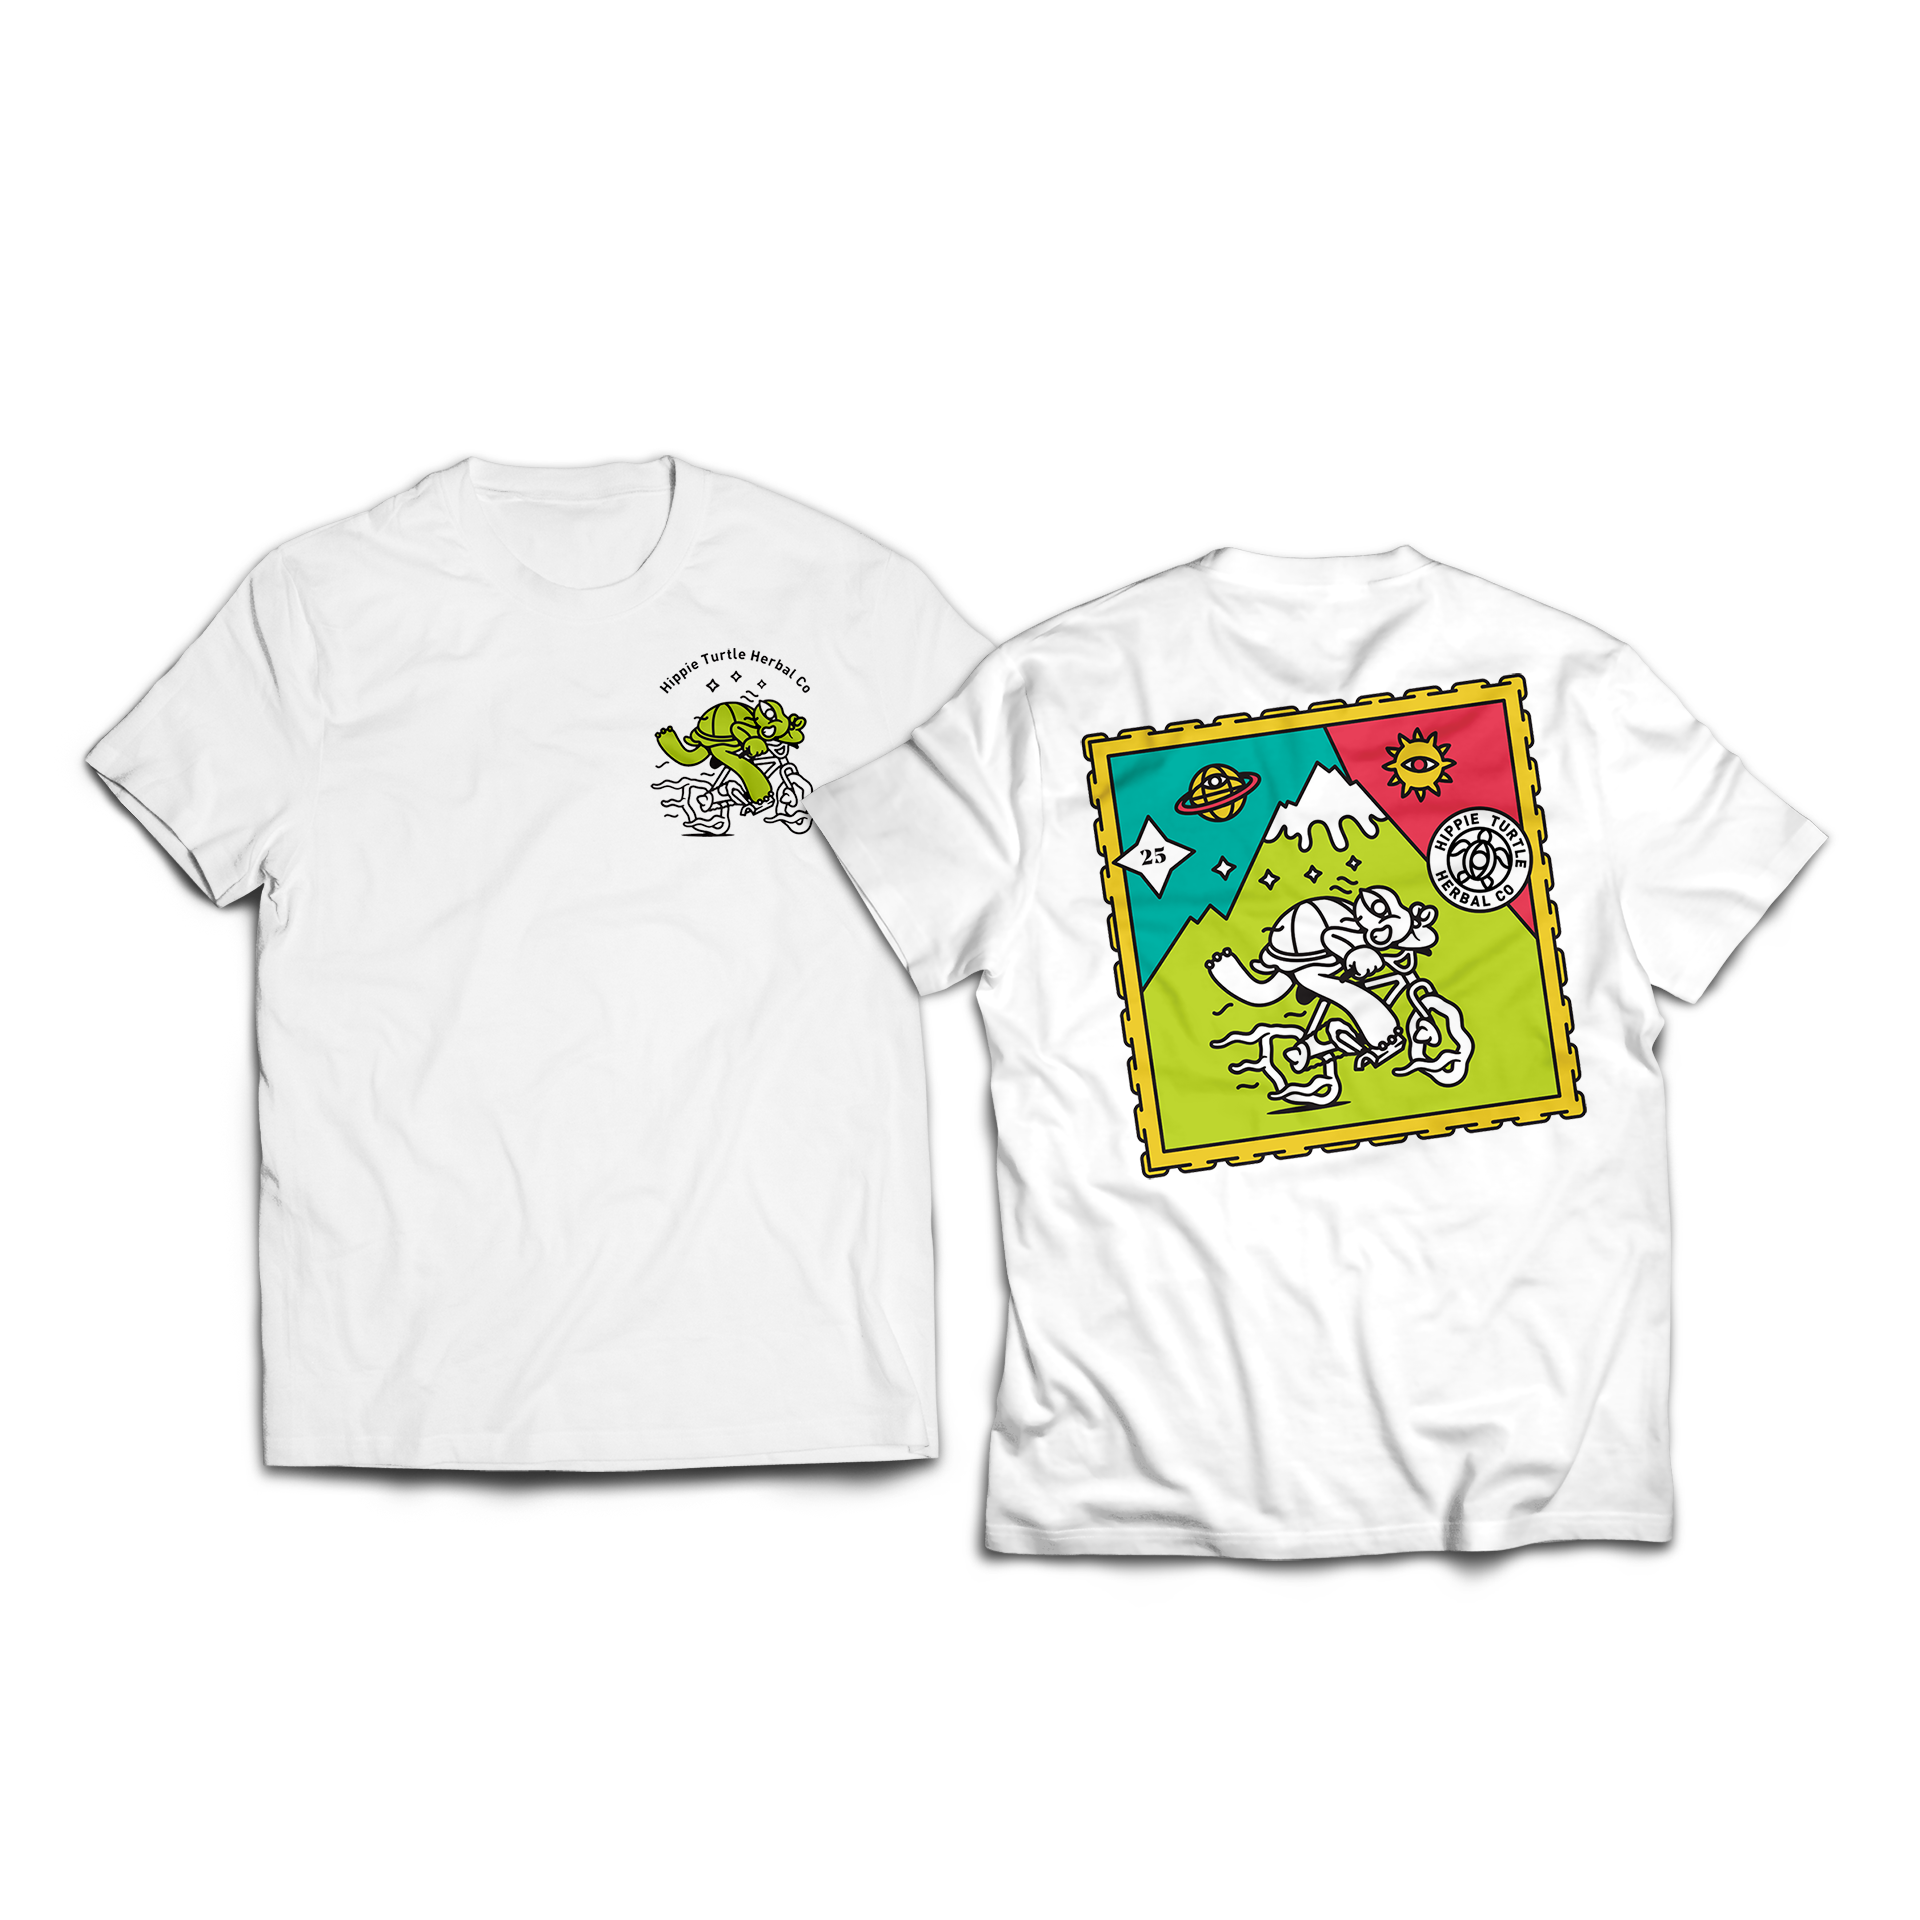 Organic eco friendly t-shirt